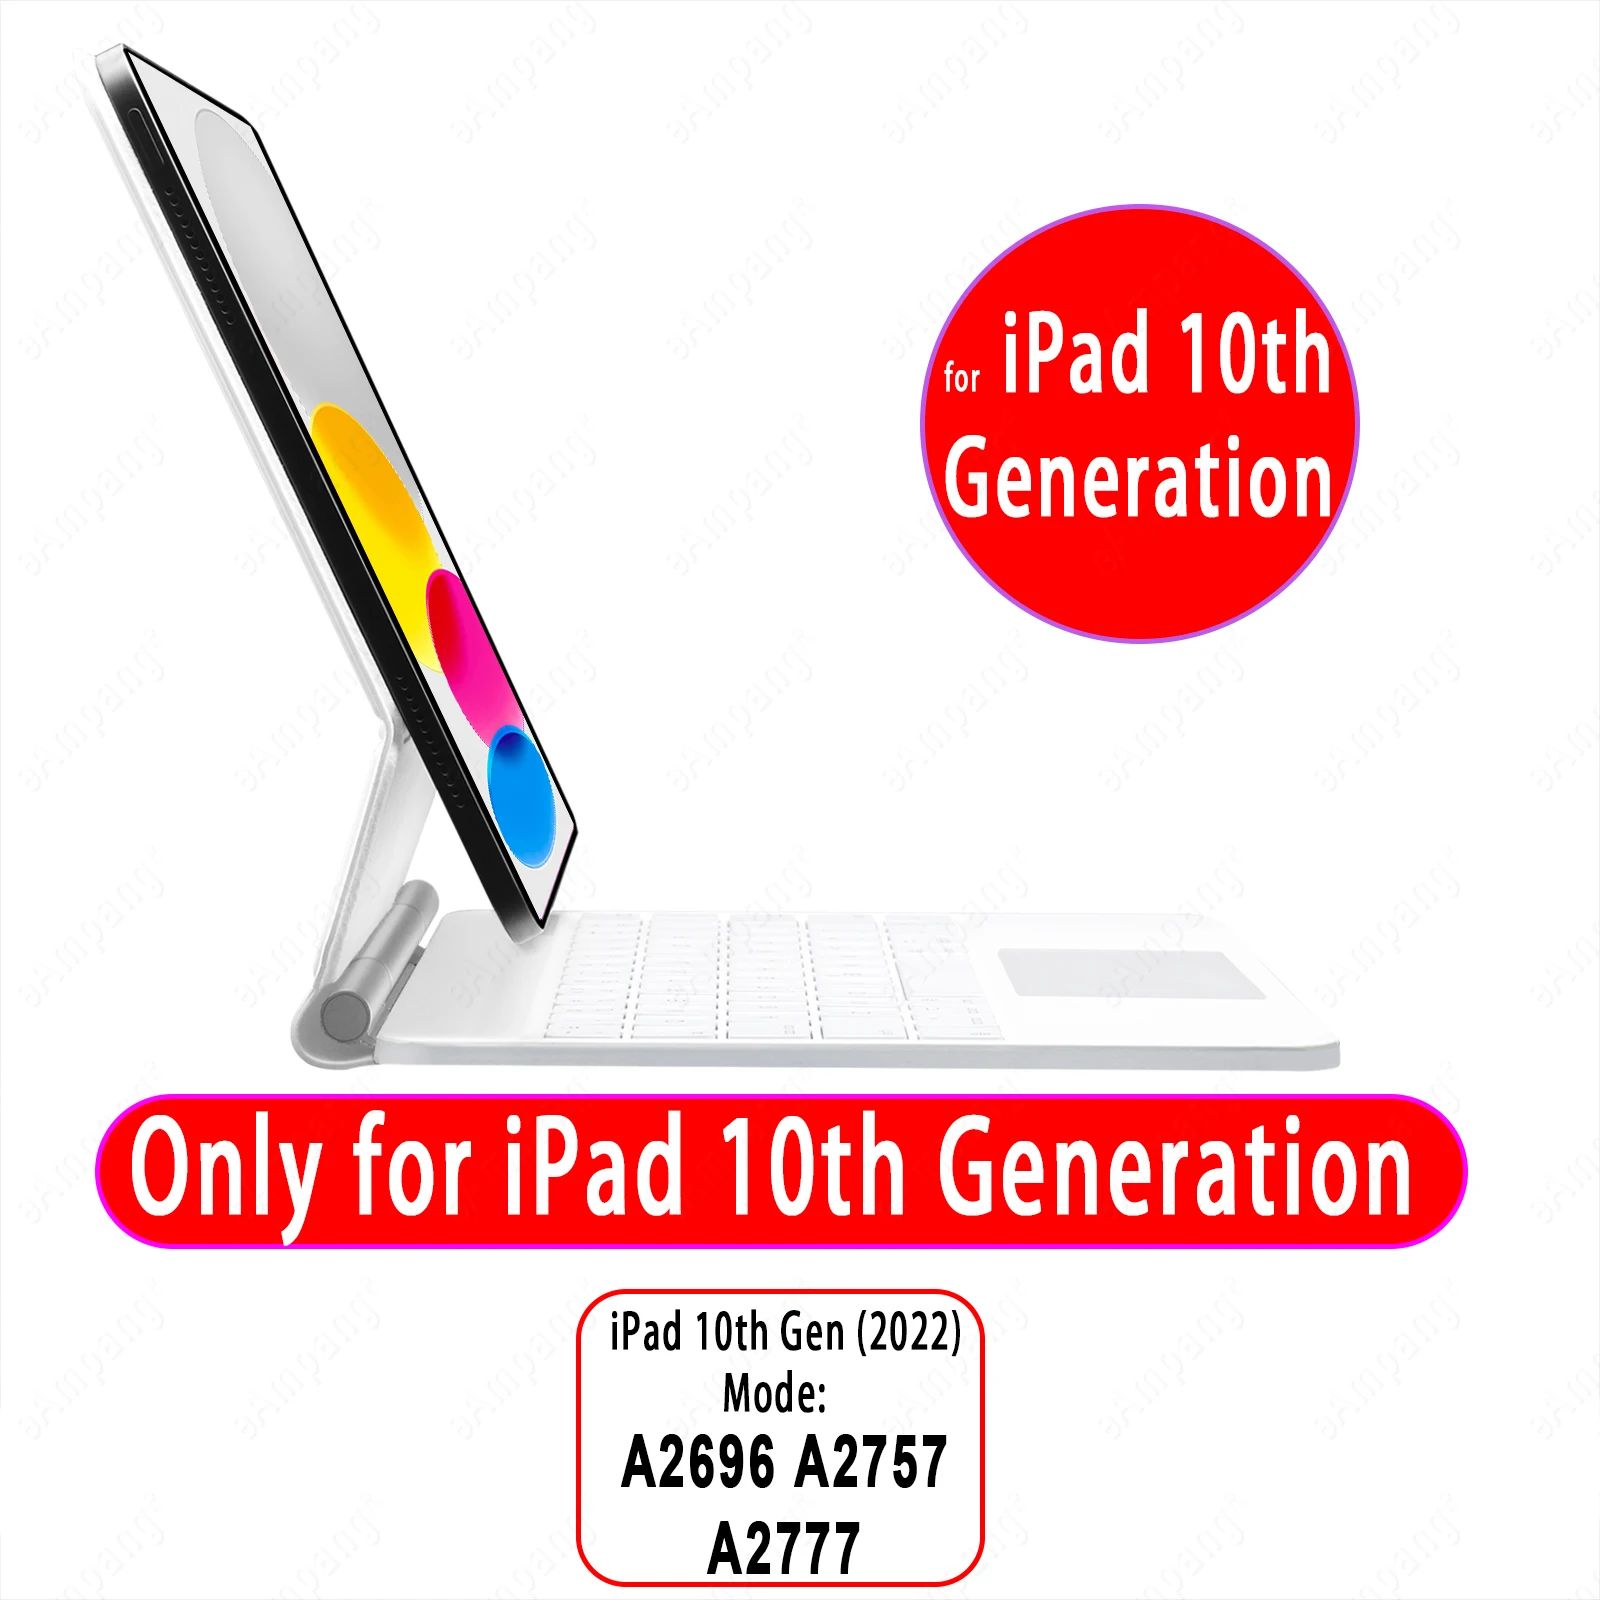 iPad 10: e generationens hebreiska